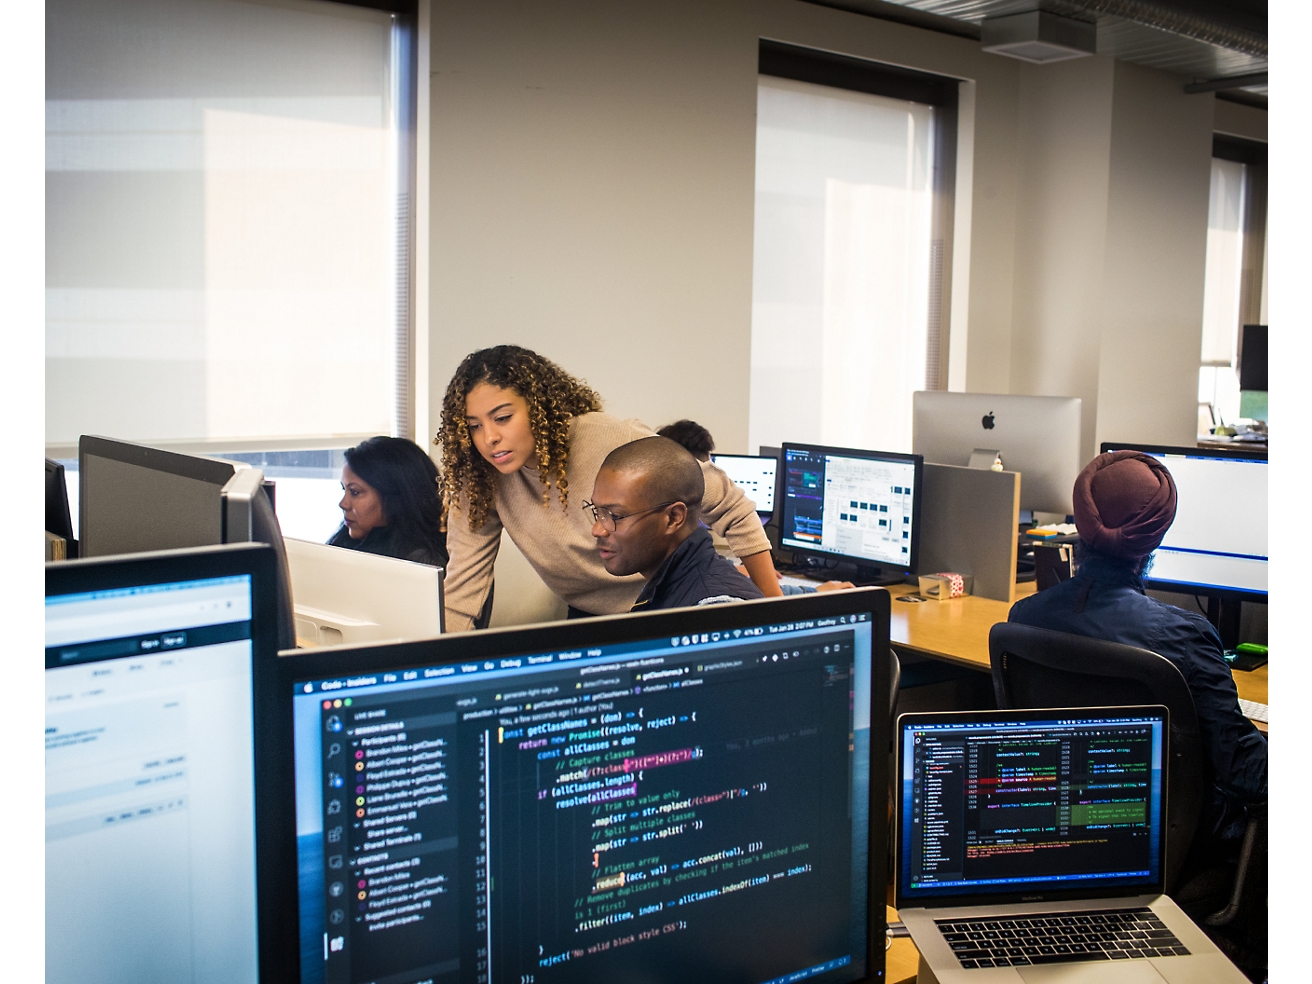 Eine Gruppe verschiedener Fachleute in einer Büroumgebung, die an Computern arbeiten und sich auf Bildschirme konzentrieren, auf denen Code und Daten zu sehen sind.